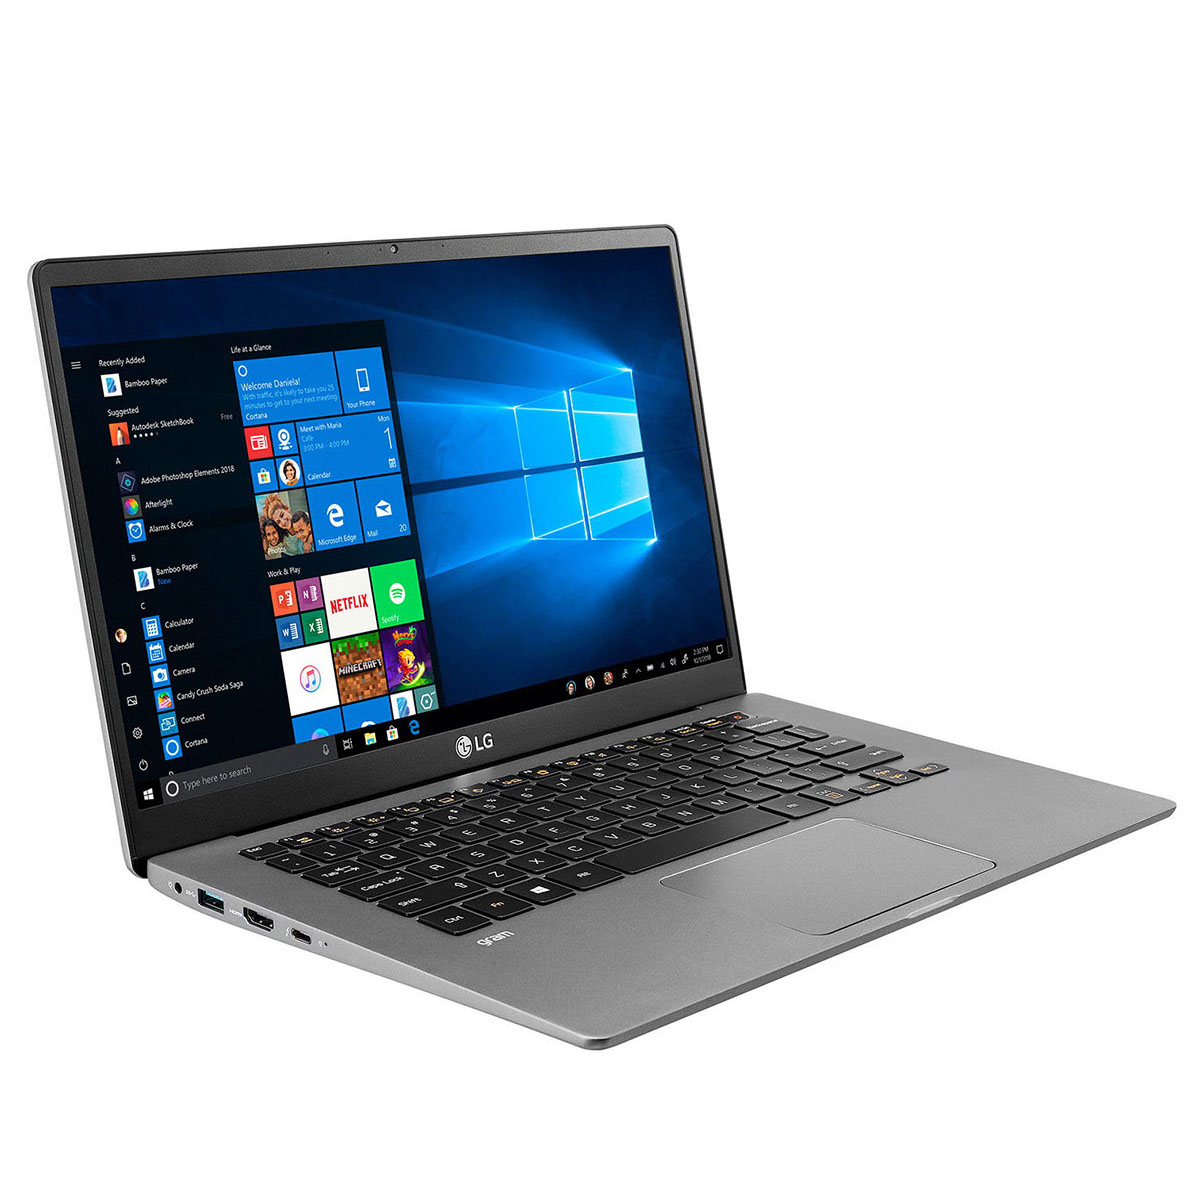 Laptop LG Gram 14Z90N (i5 1035G7/8GB RAM/256GB SSD/14.0inch FHD/FP/Win10 Home/Xám Bạc) - V.AR52A5